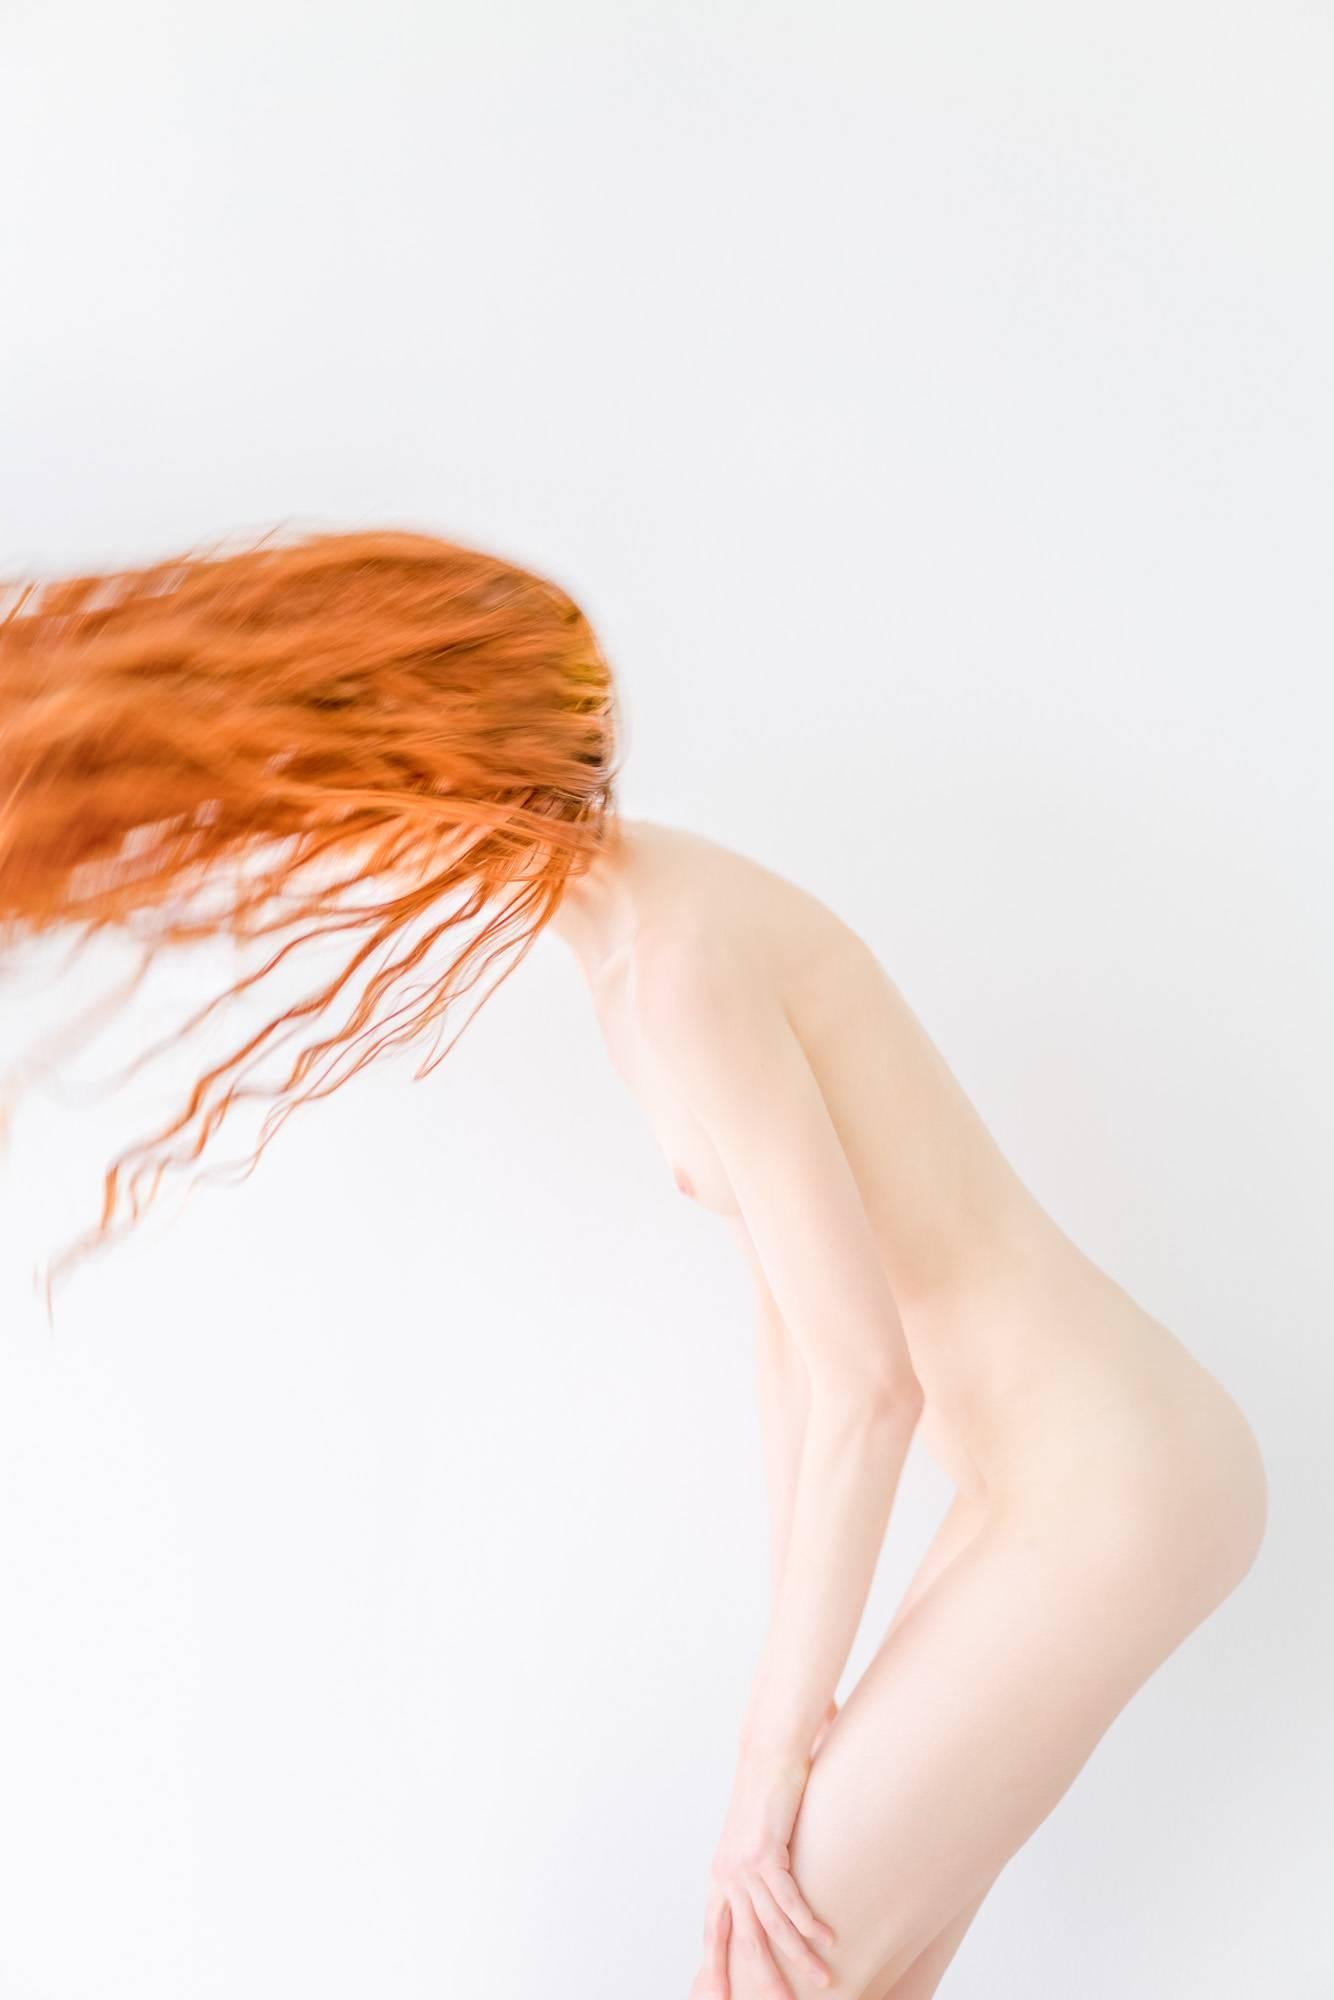 Nude Photograph de David Jay - ROJO nº 1, Fotografía en color de desnudo